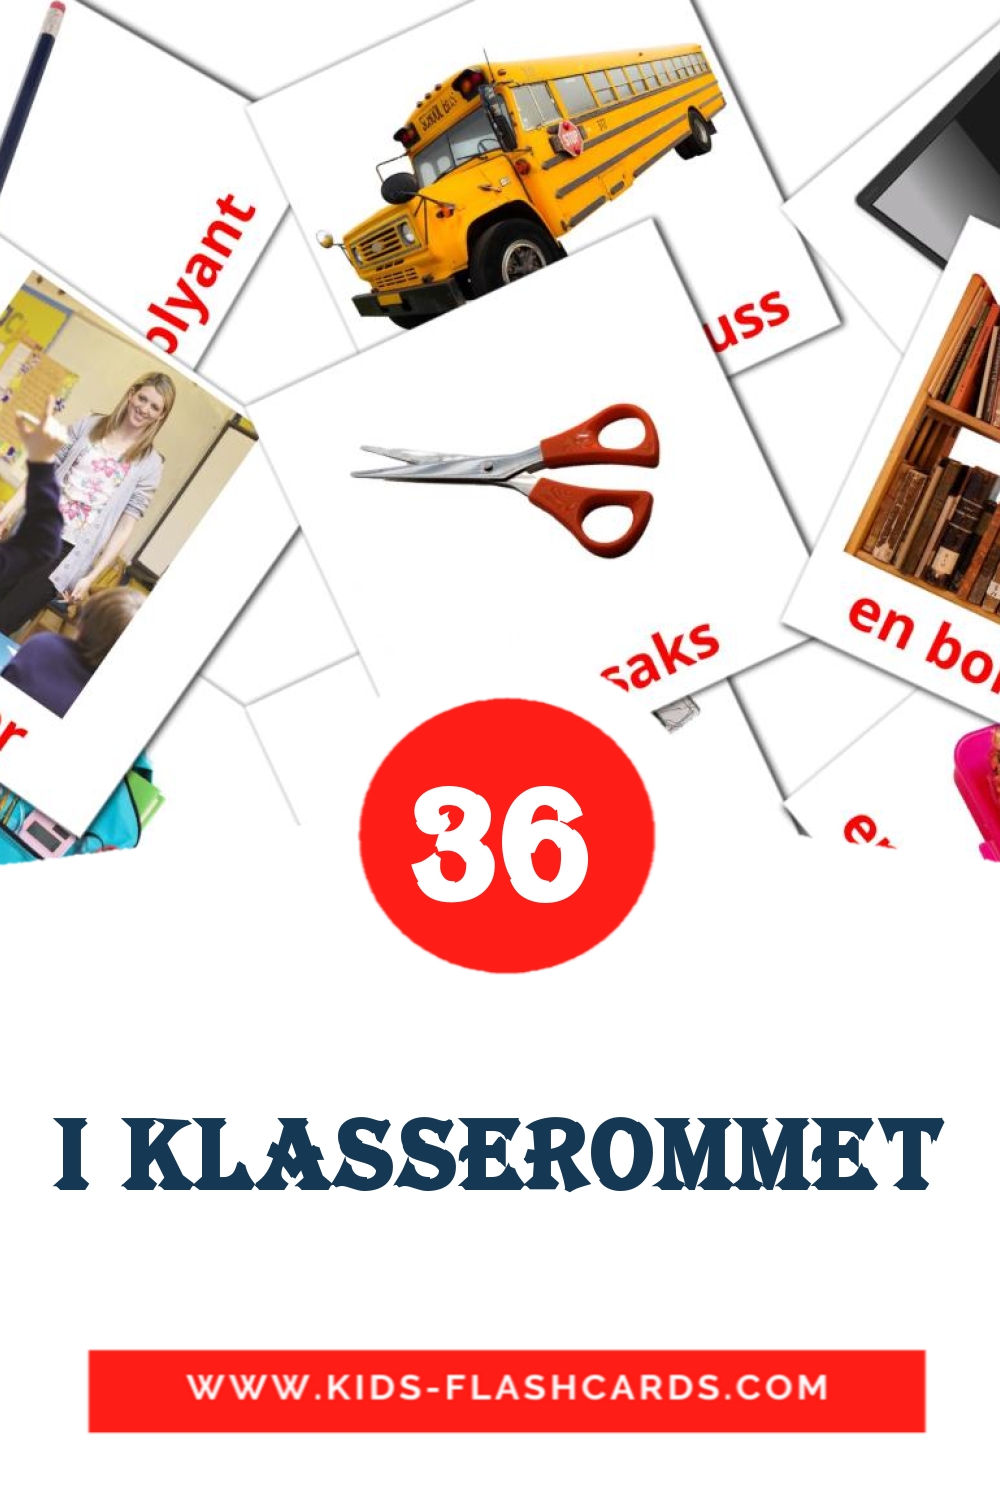 36 Cartões com Imagens de I klasserommet para Jardim de Infância em norueguês